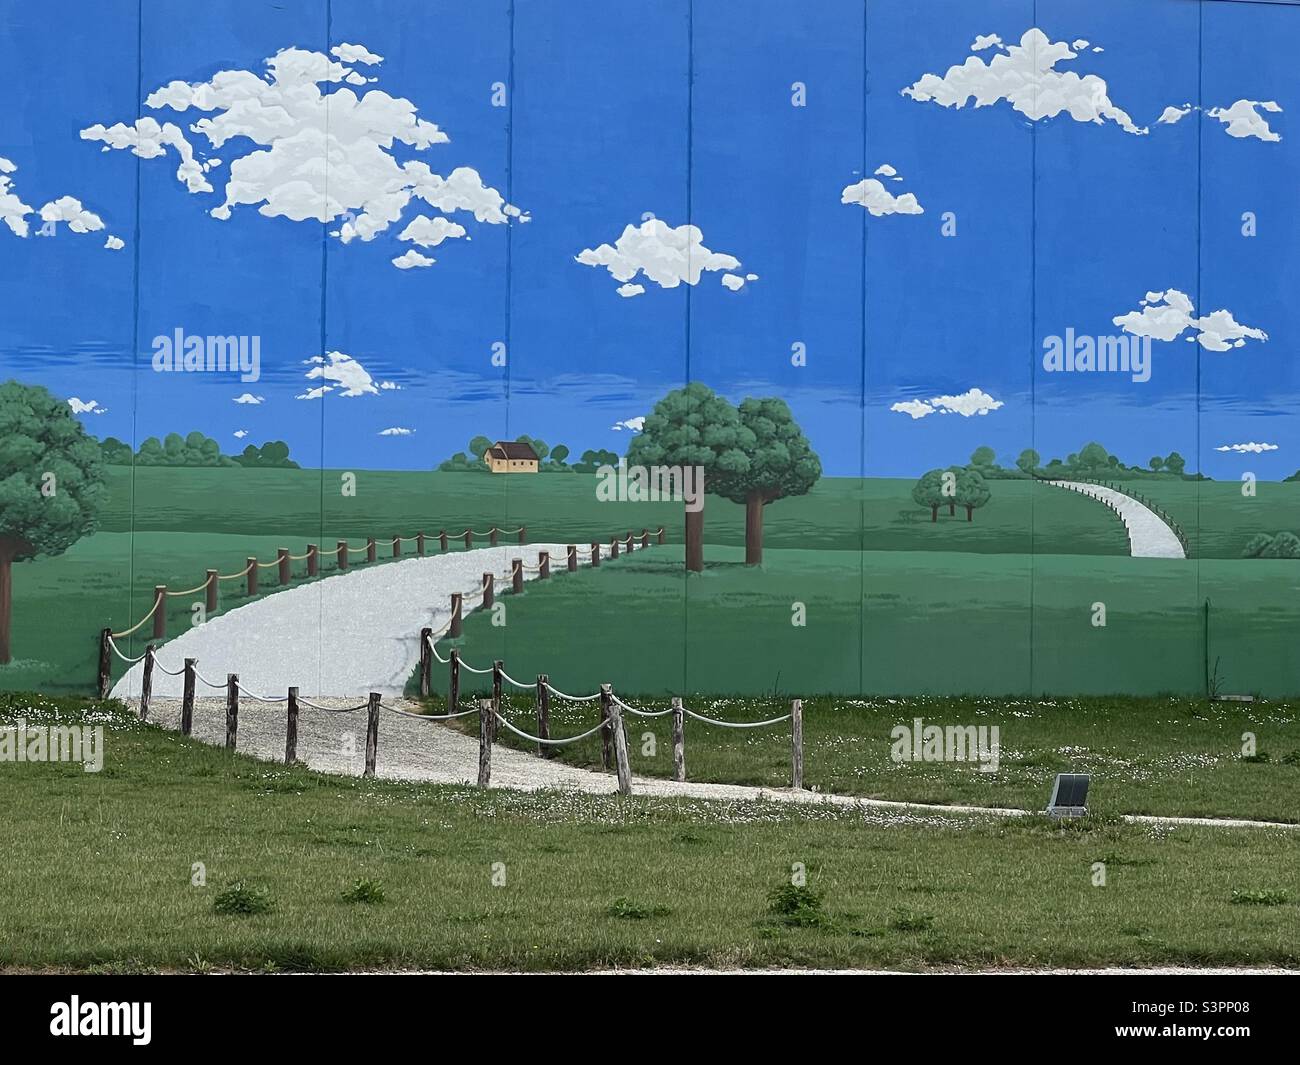 Camino a un campo virtual, murales creativos con un paisaje rural Foto de stock